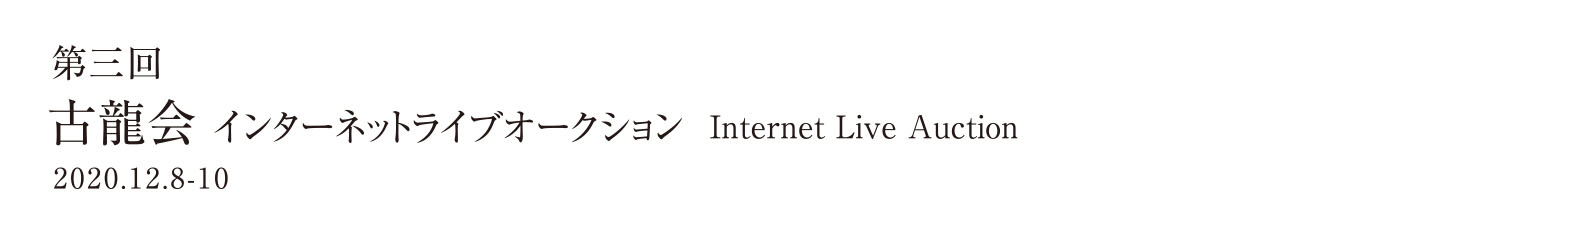 第三回インターネットライブオークション 2020.12.8-10